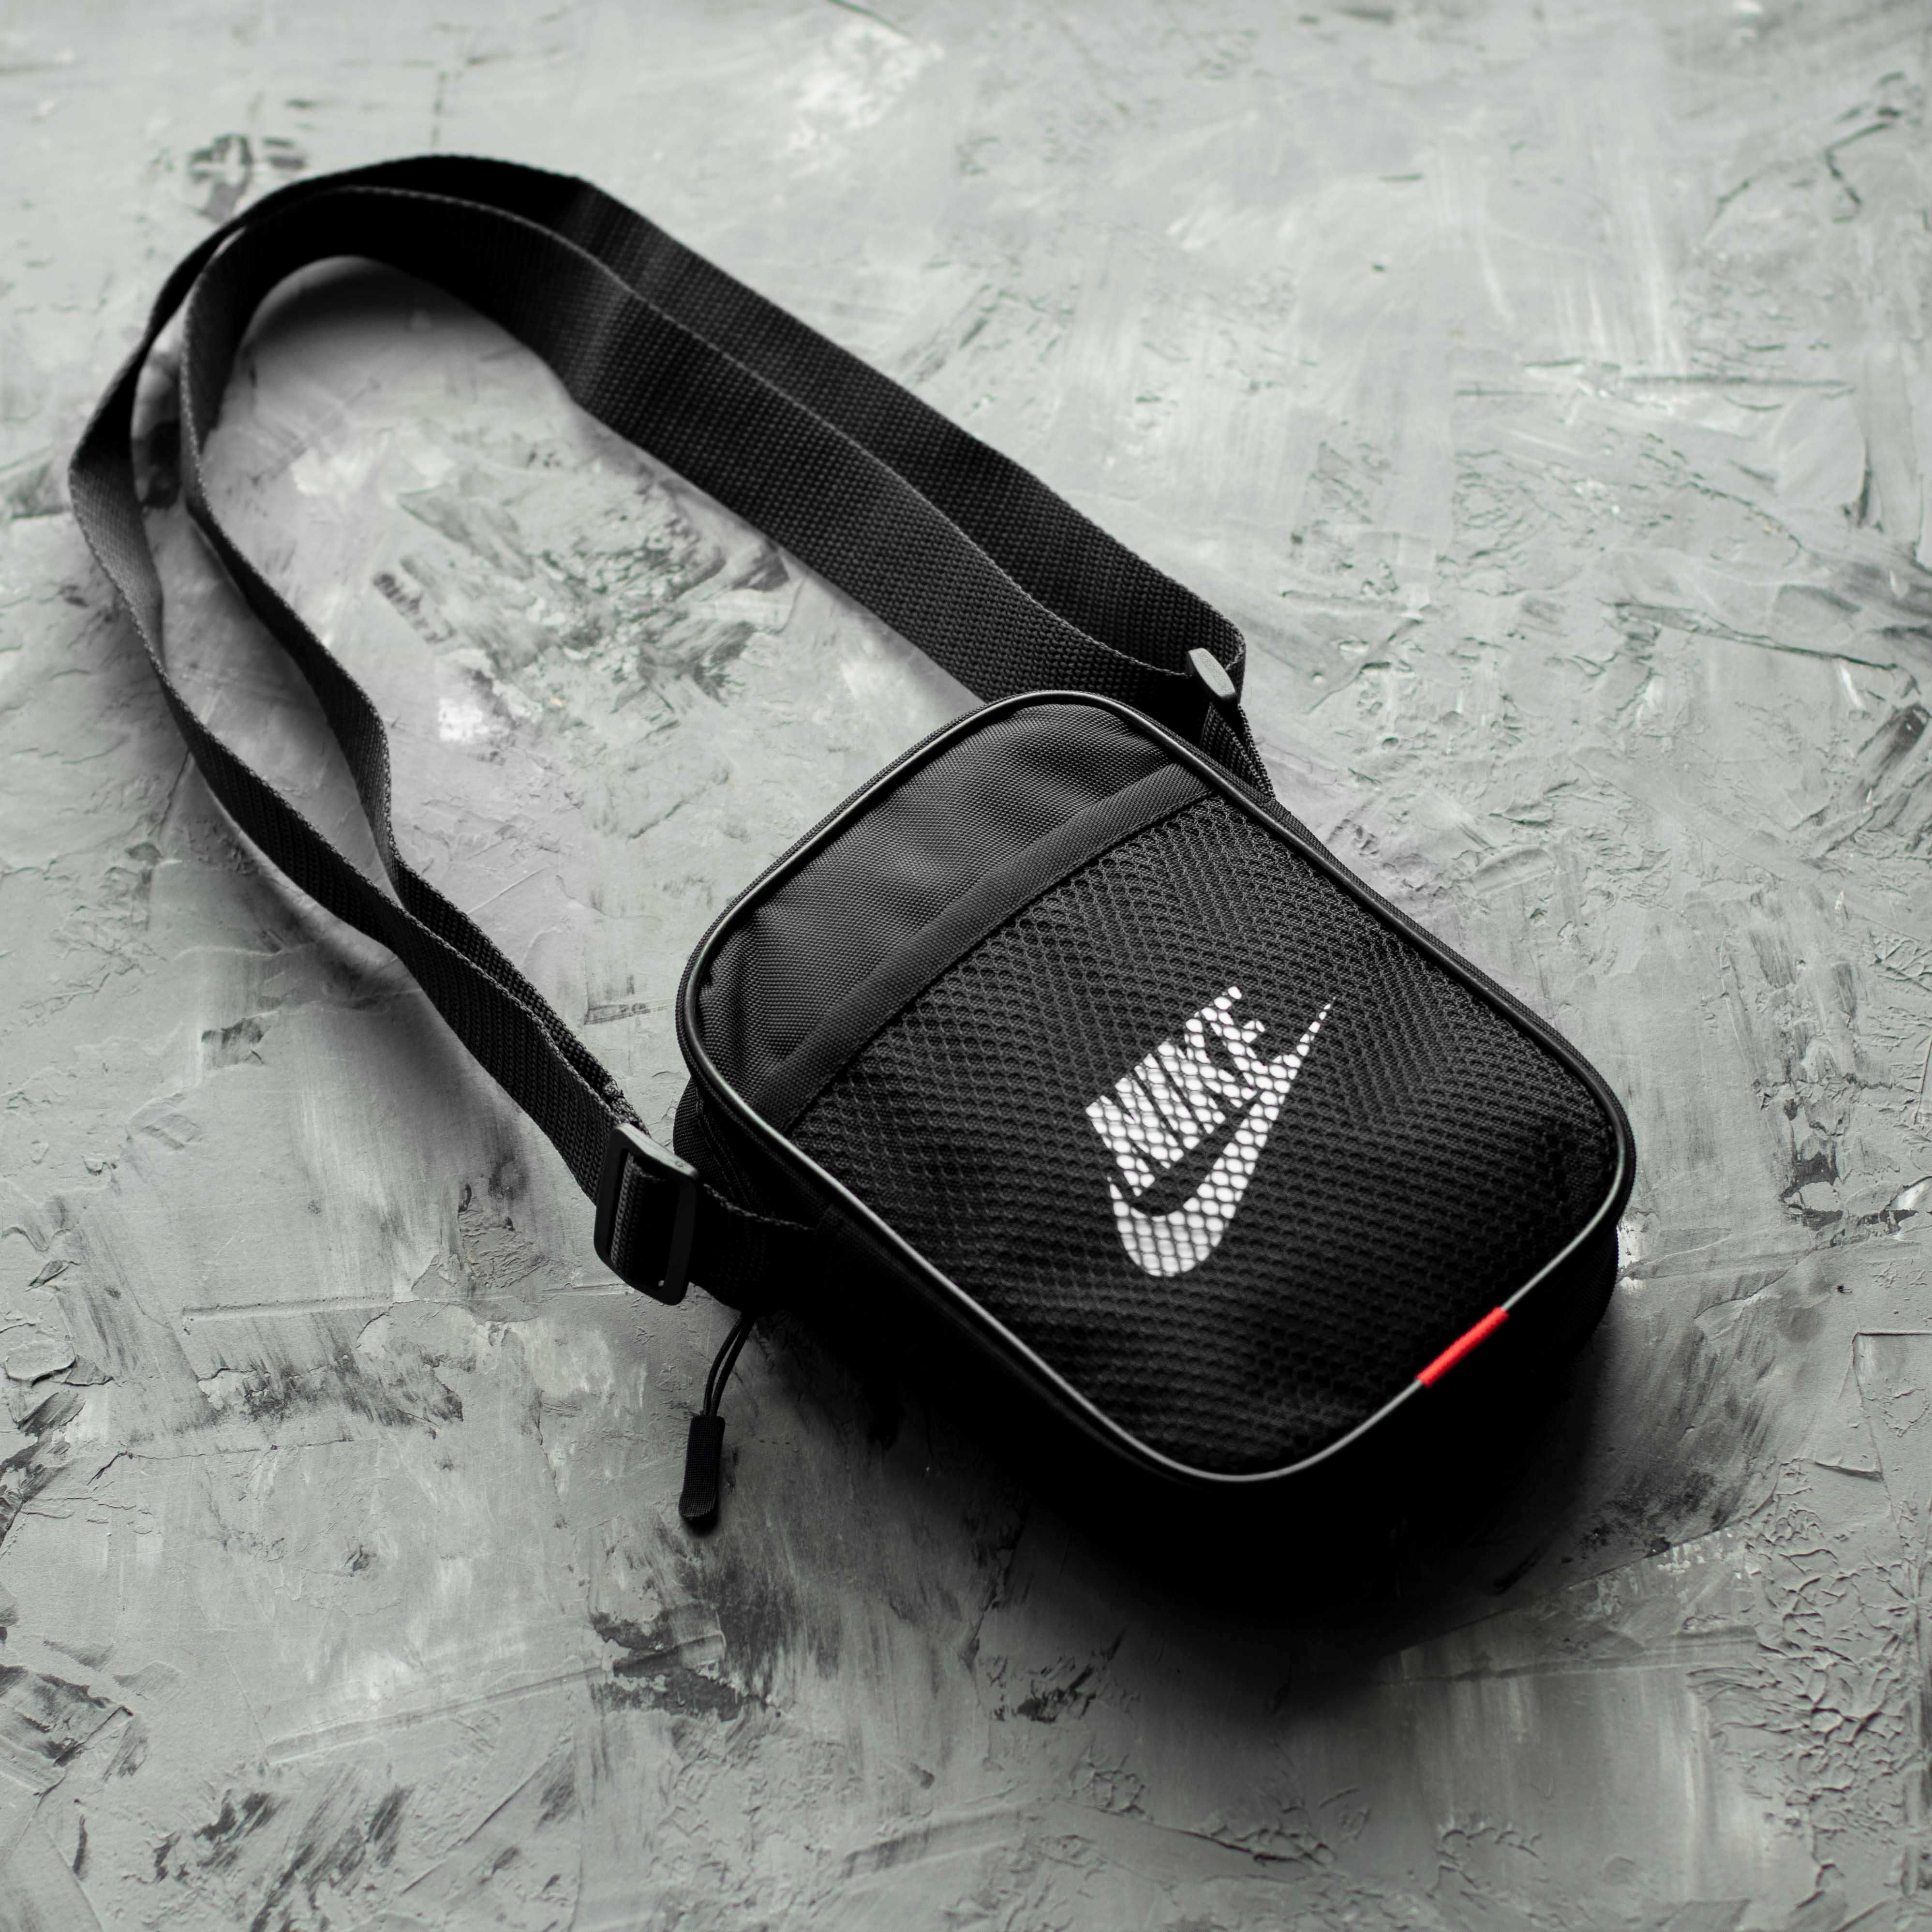 Барсетка Nike черная Сумка через плечо Найк тканевая мессенджер